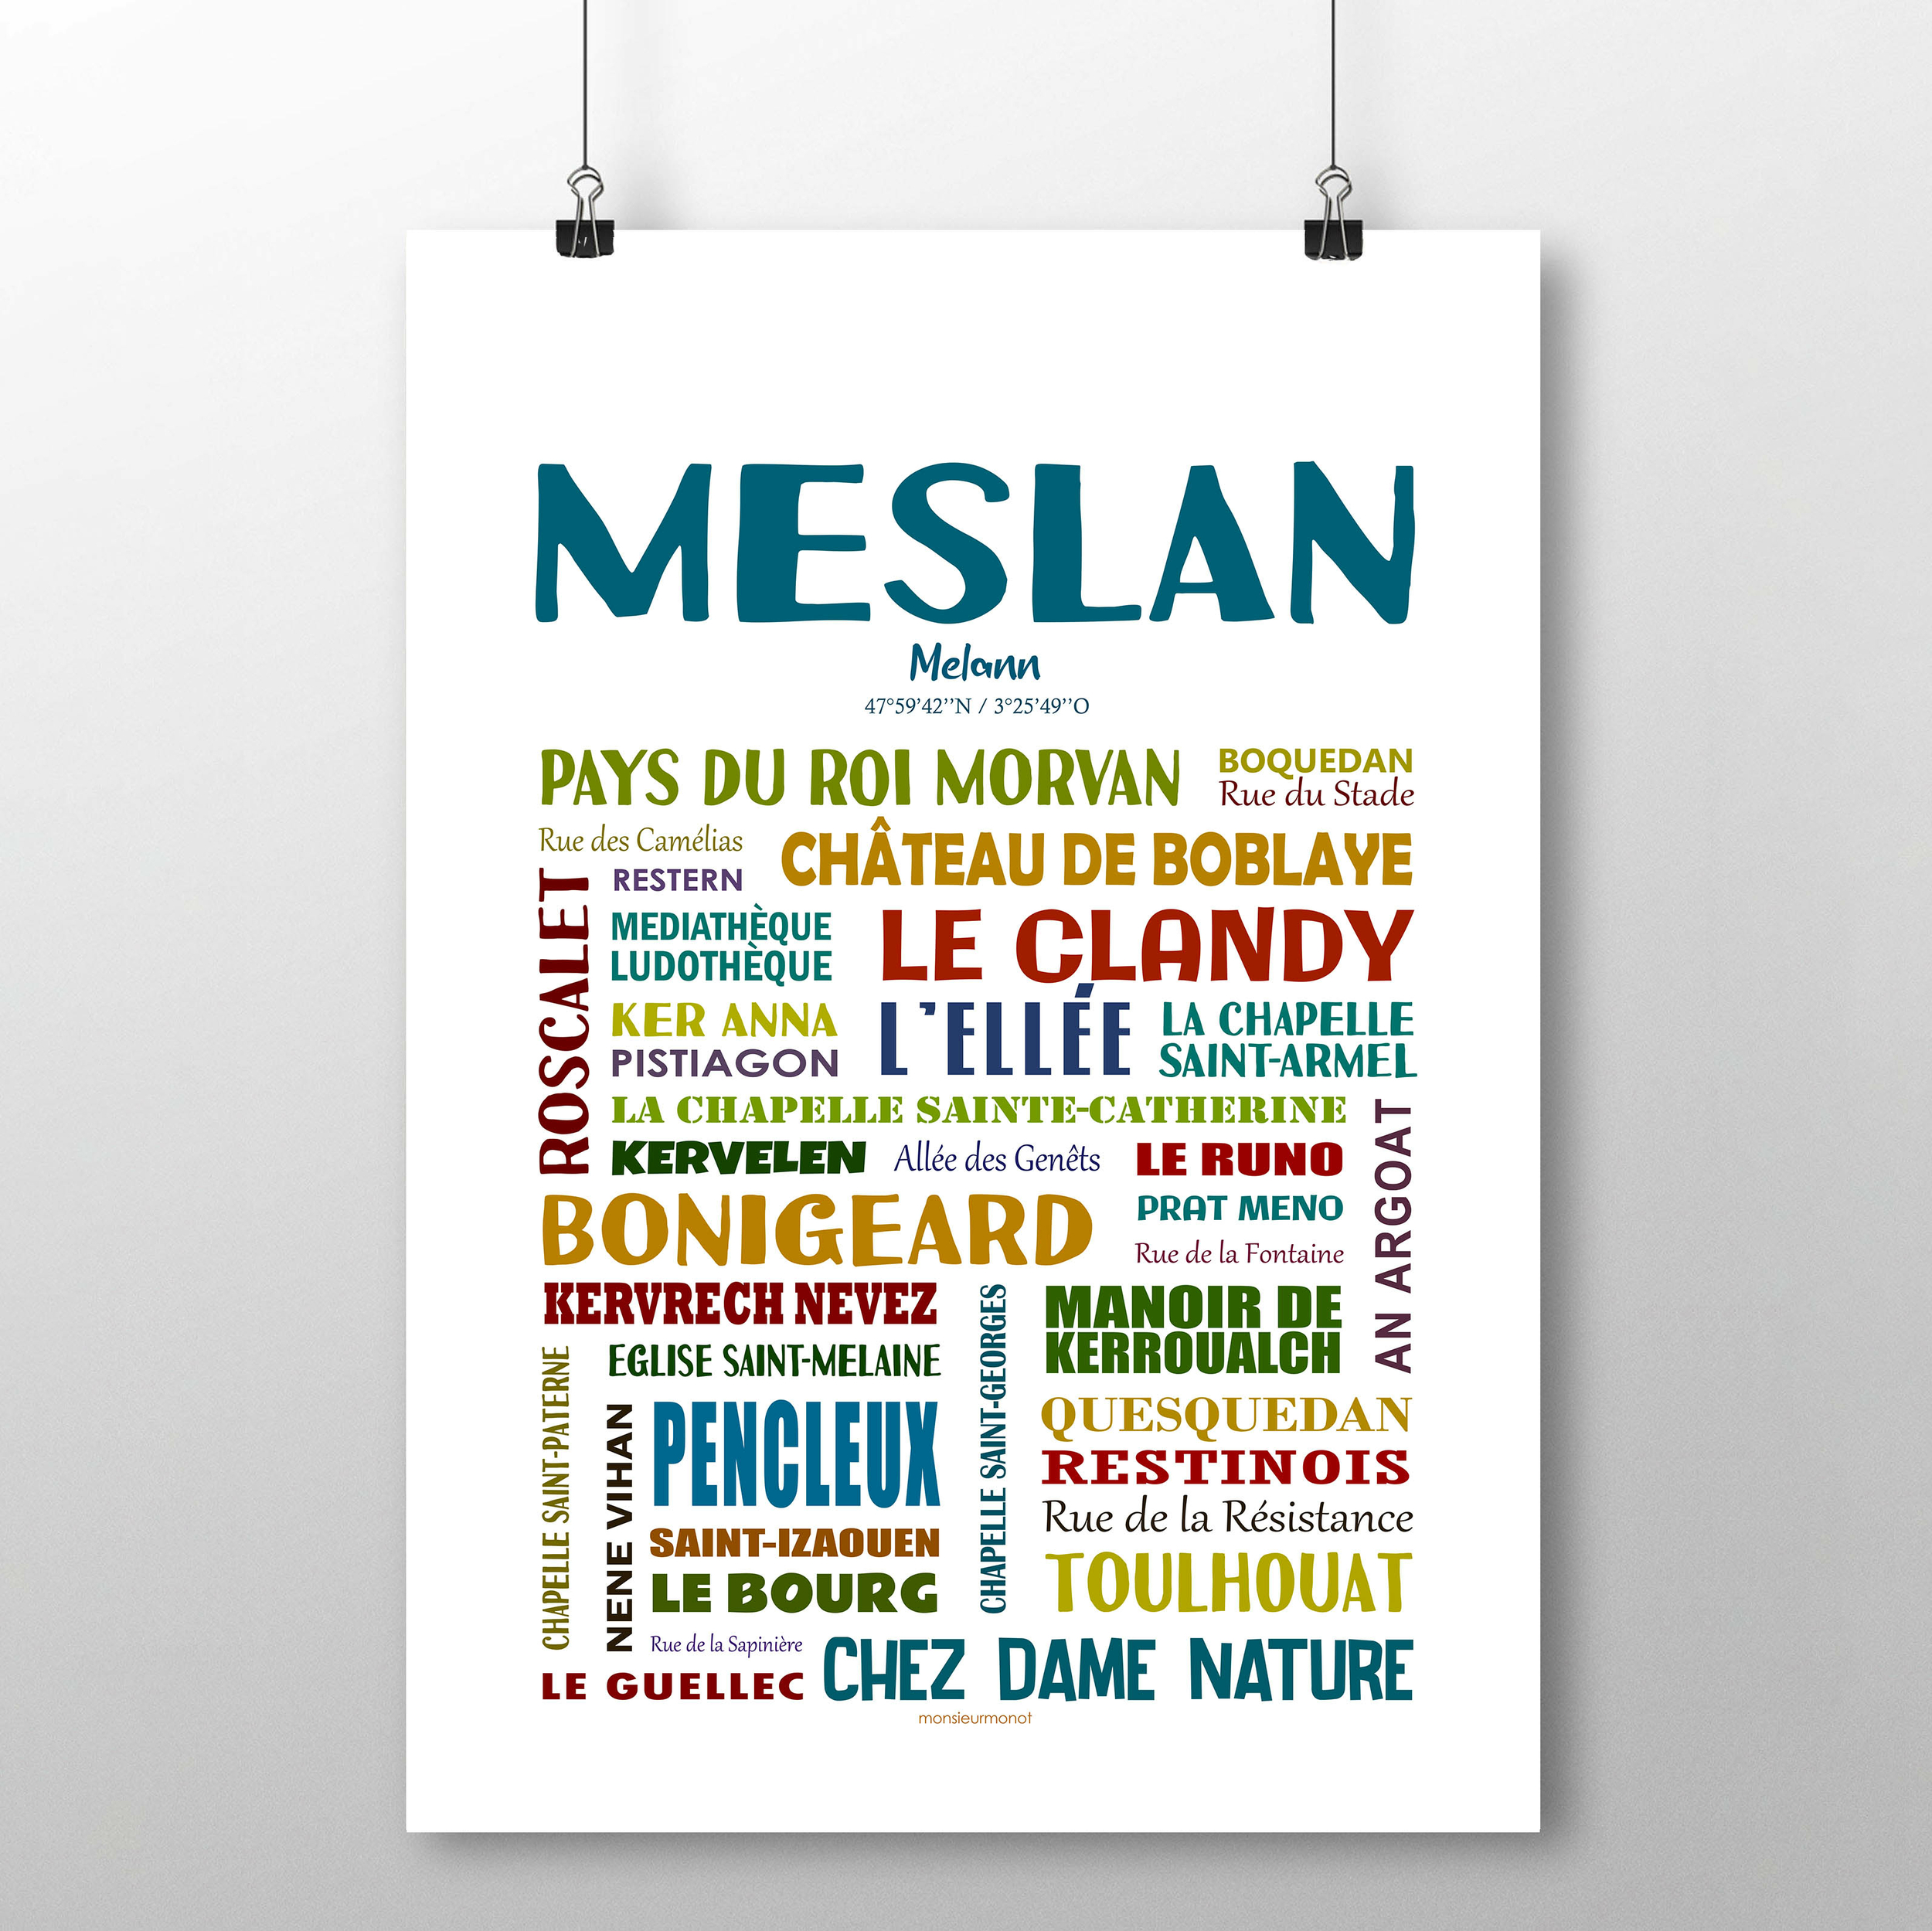 Meslan 2